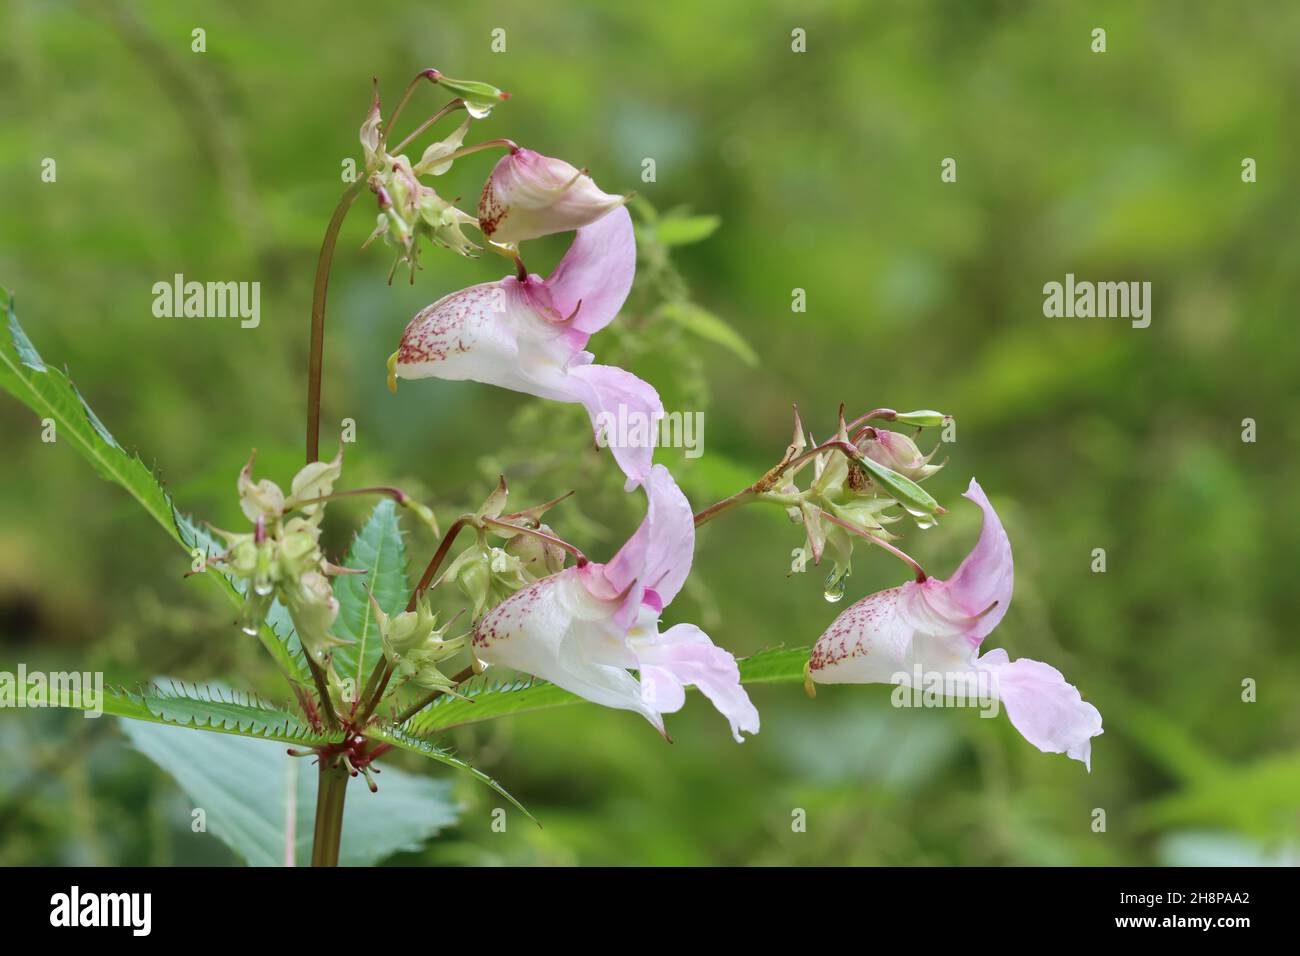 Primer plano de las delicadas flores rosadas de Impatiens glandulifera sobre un fondo verde borroso Foto de stock